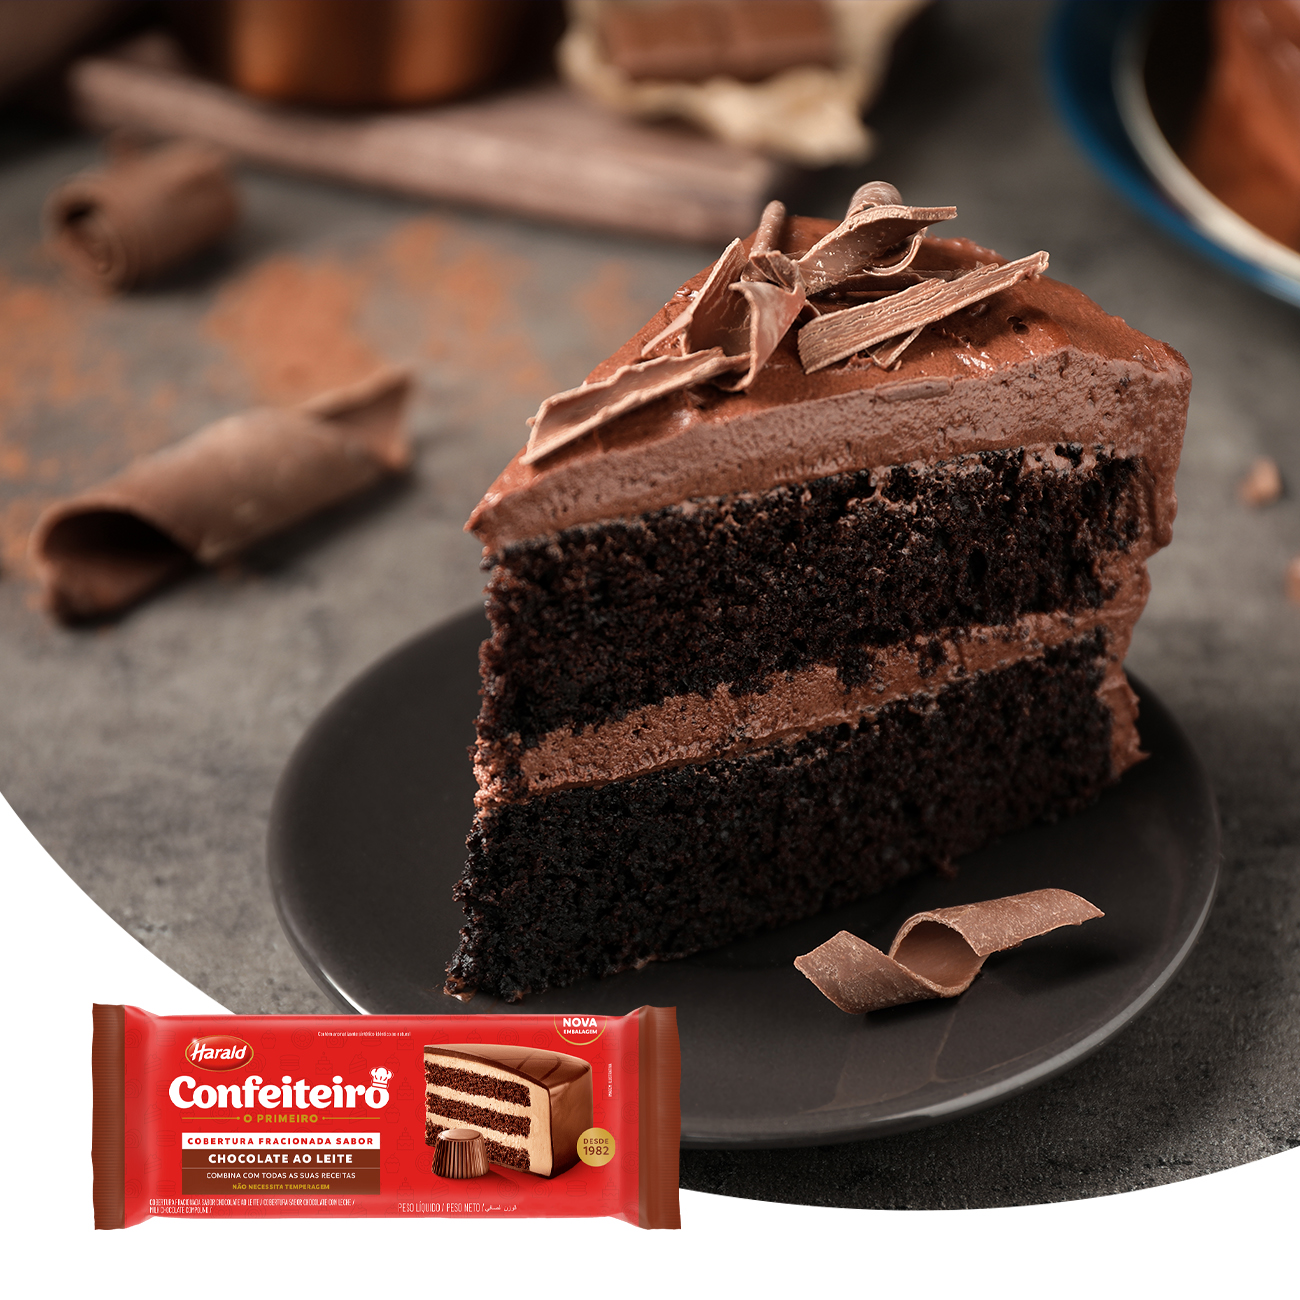 Cobertura de Chocolate em Barra Harald Confeiteiro Fracionada ao Leite 2,1kg